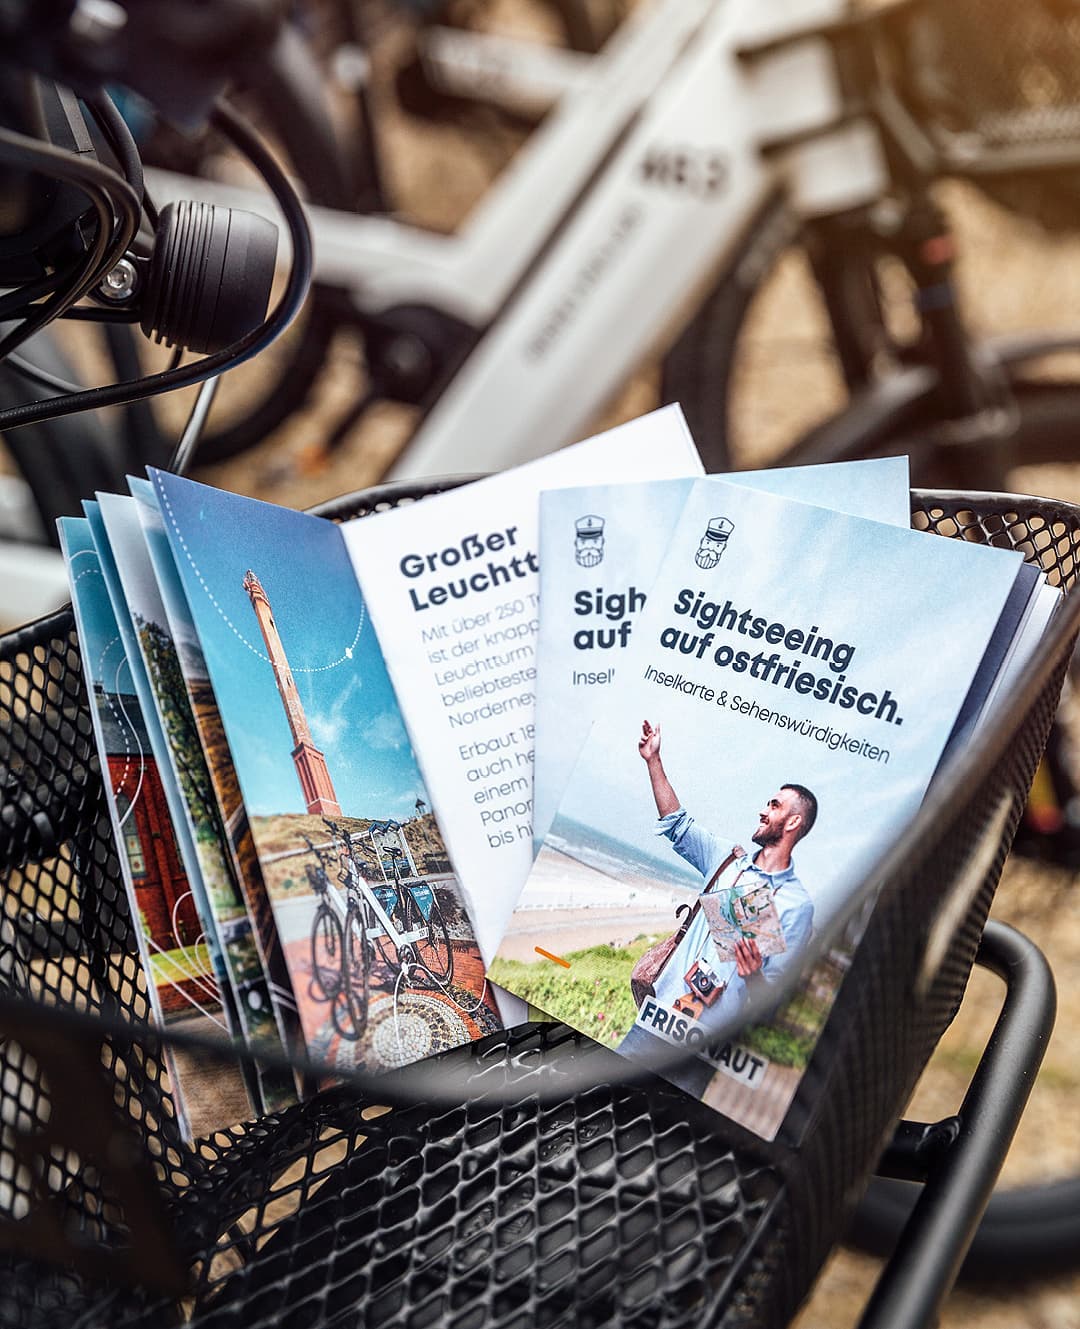 Entdecke Norderneys Top 11 Sehenswürdigkeiten mit deinem Local Guide @frisonaut 🏝️Spannende Inselfakten, interaktive Inselkarte und vieles mehr. ⚓🧭Hol dir deine Inselkarte kostenlos bei Nordsee-bike Norderney - Langestraße 15 - und starte dein Abenteuer. 👌🌊